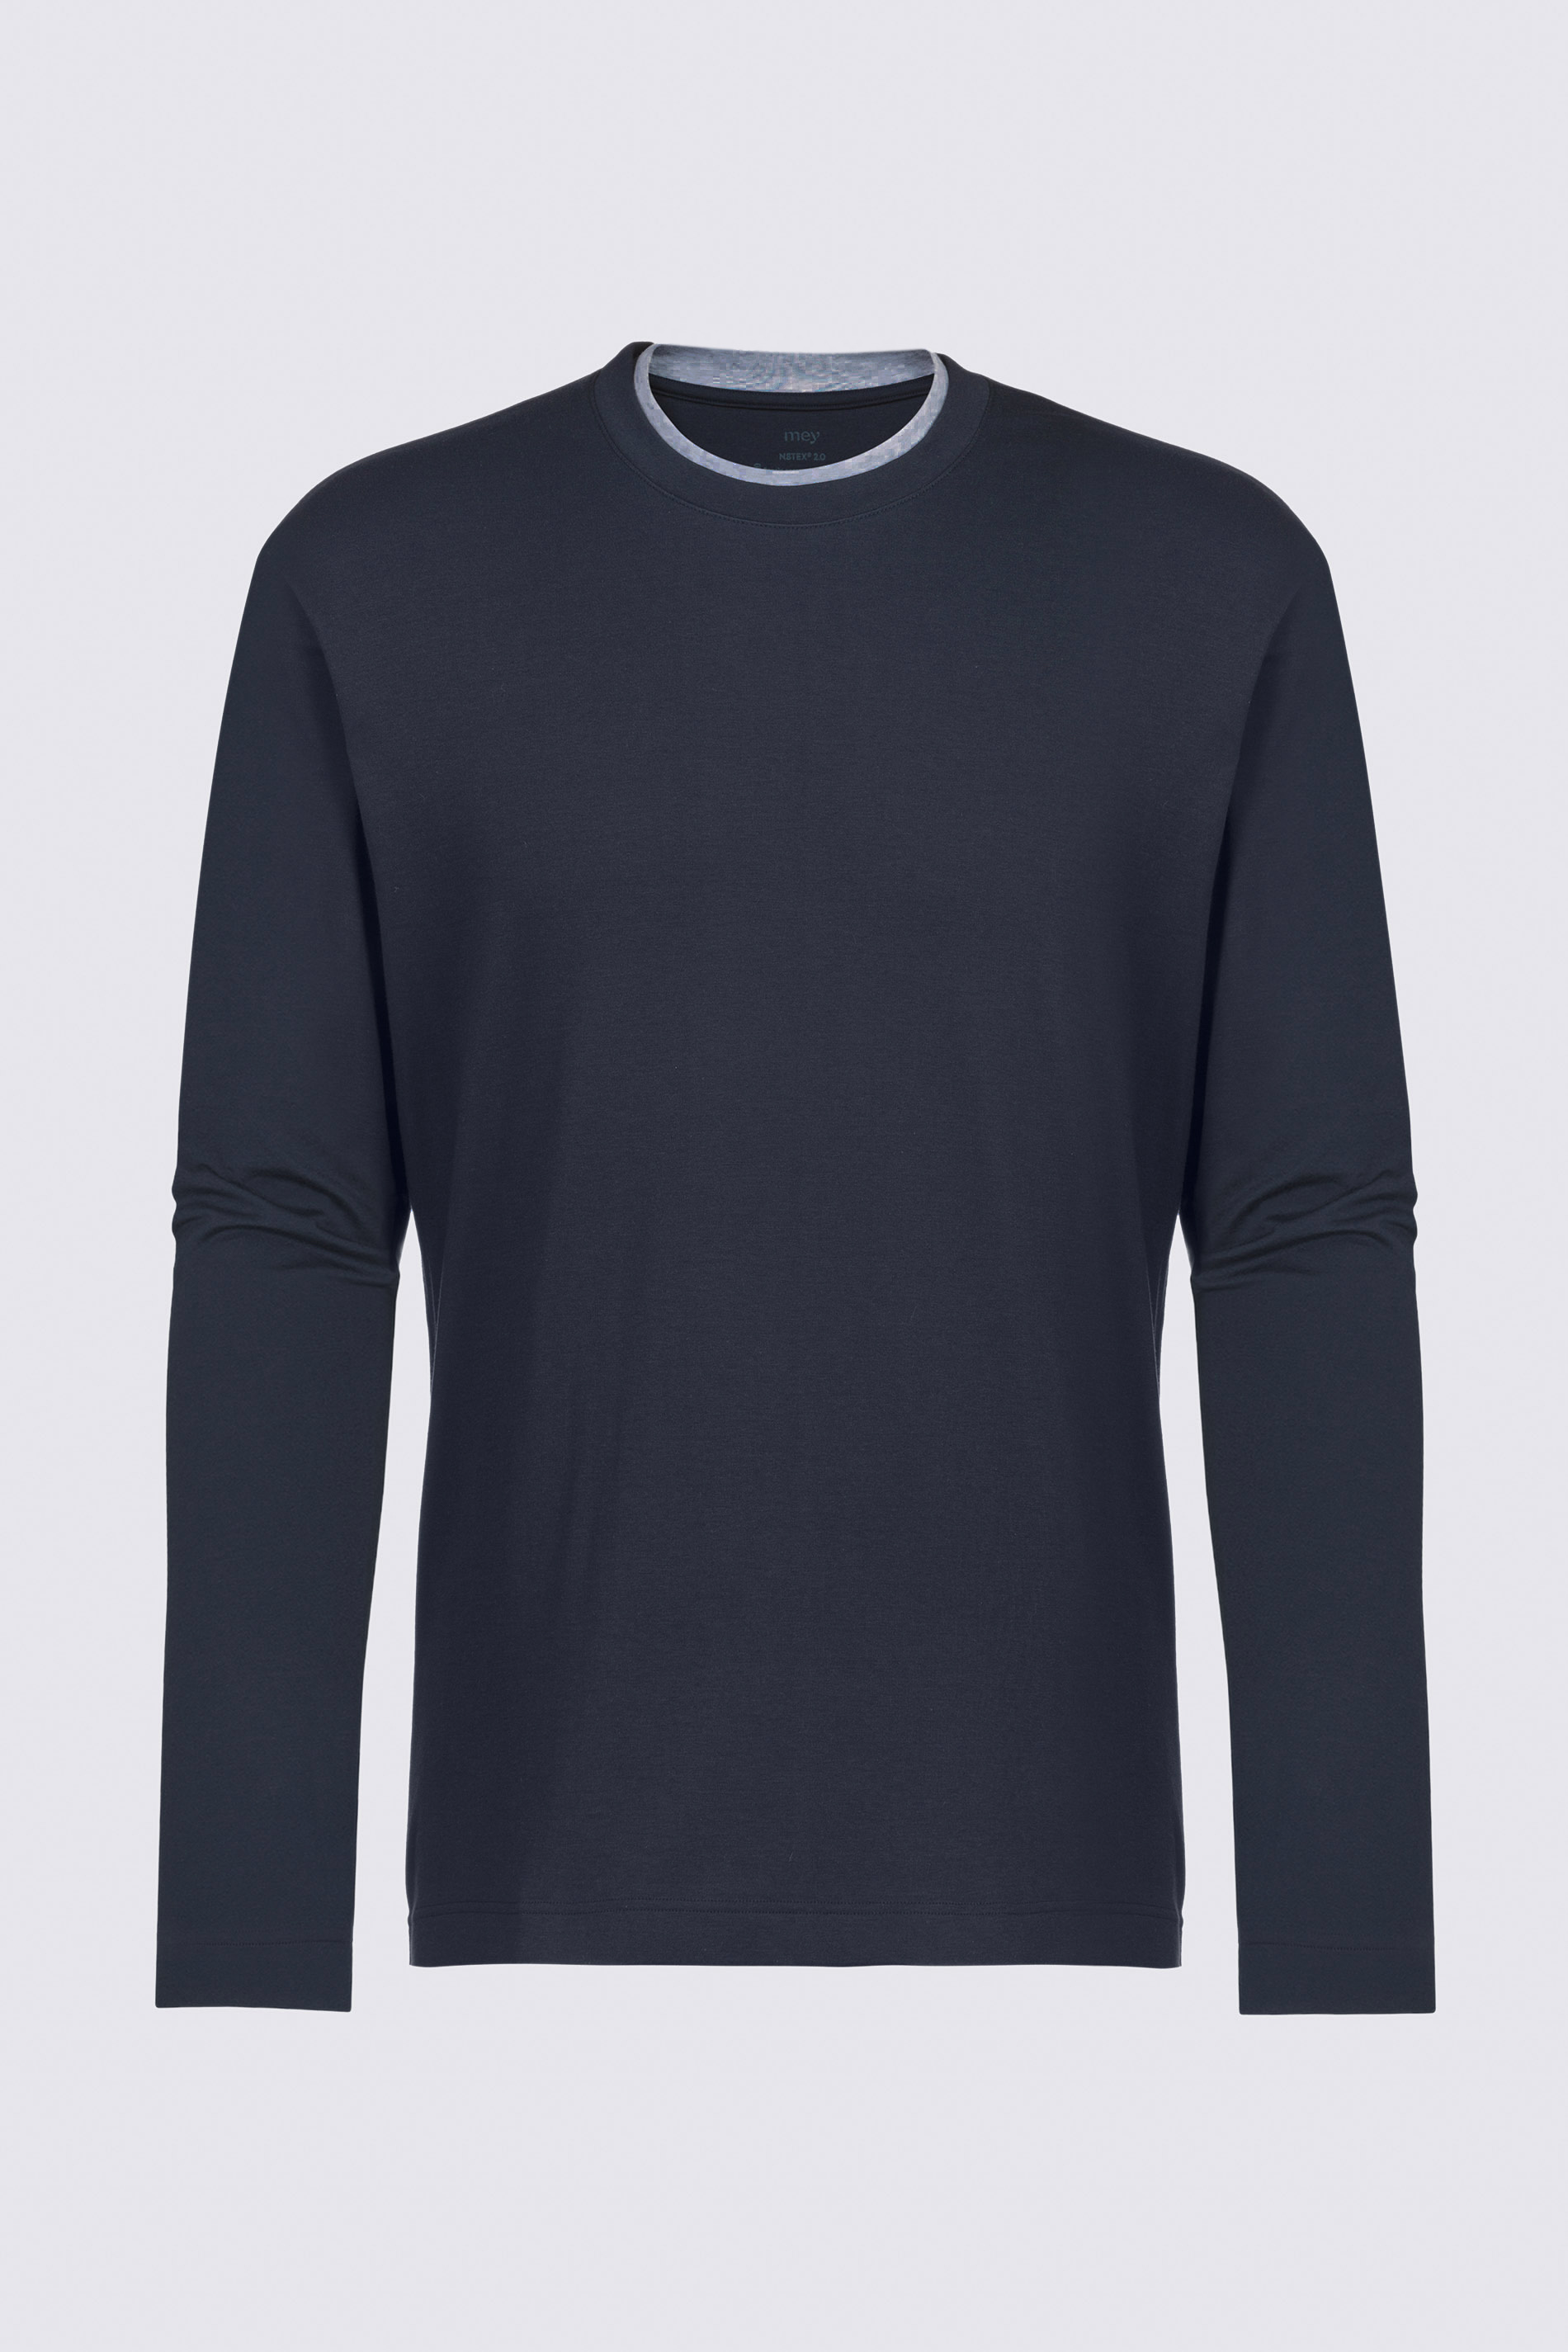 Shirt met lange mouwen Serie N8TEX 2.0 Uitknippen | mey®